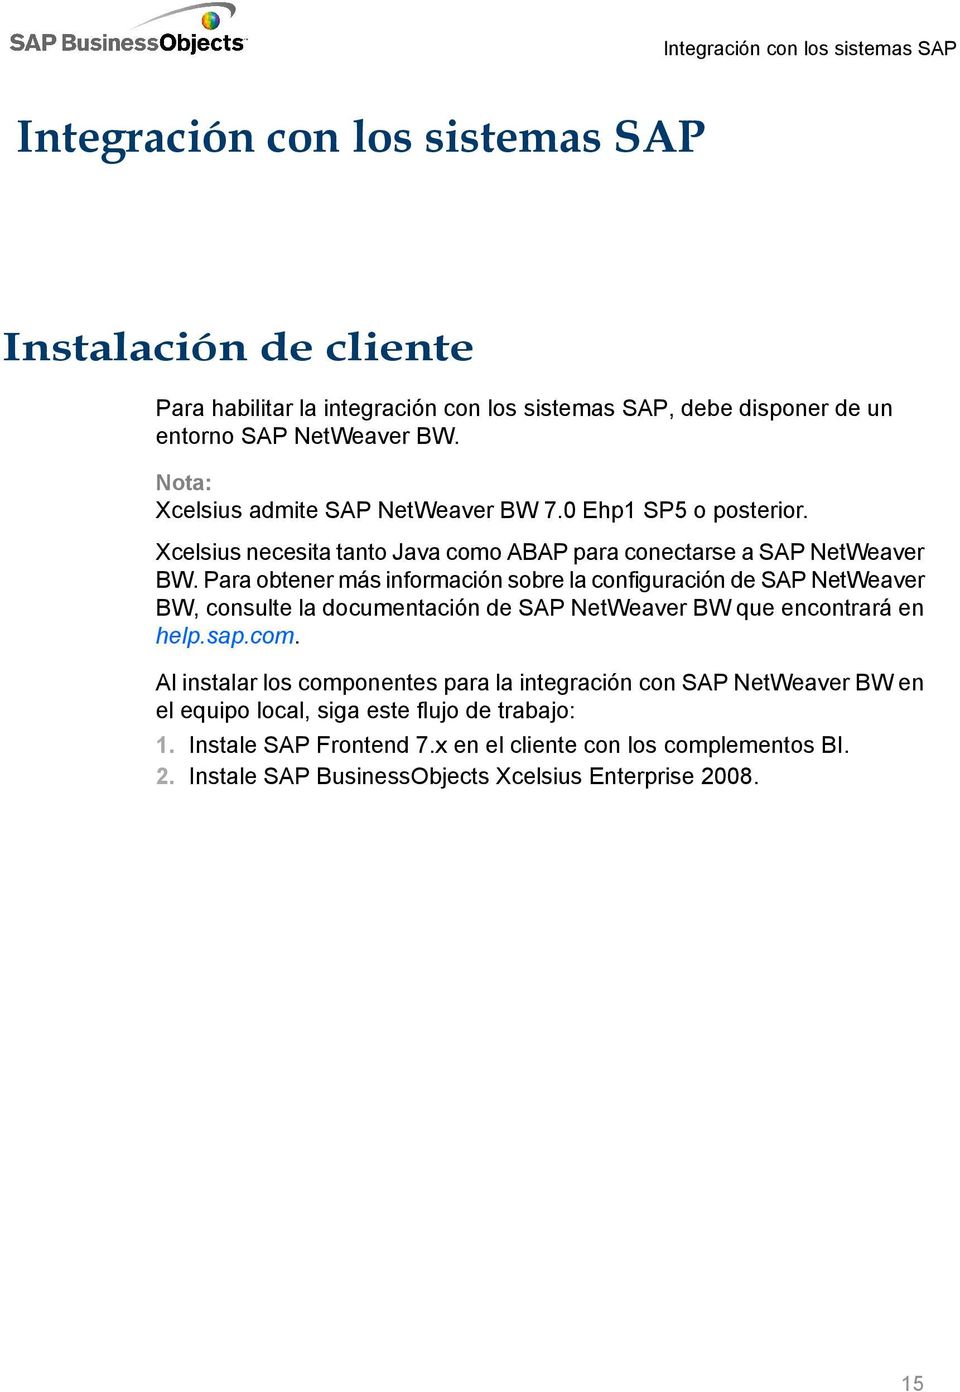 Para obtener más información sobre la configuración de SAP NetWeaver BW, consulte la documentación de SAP NetWeaver BW que encontrará en help.sap.com.